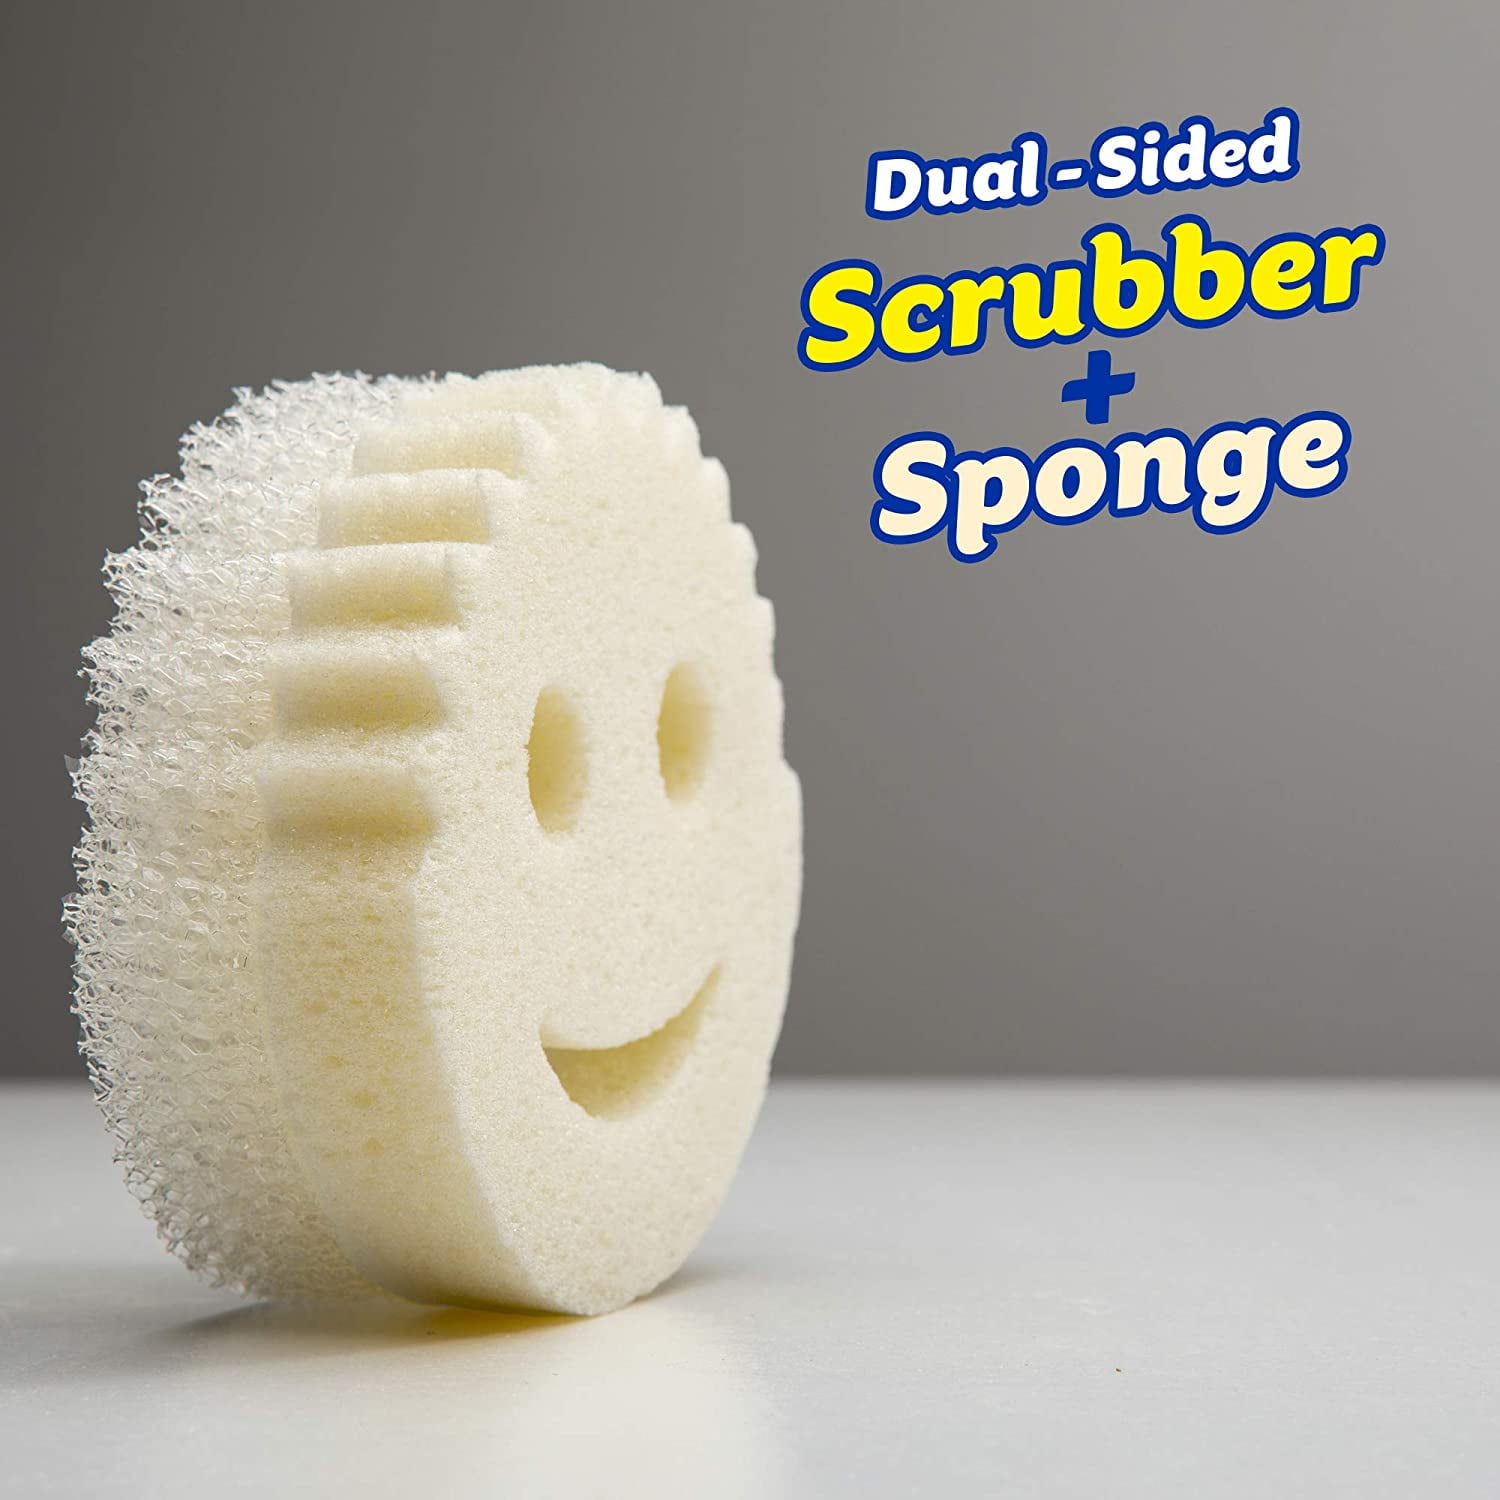 Scrub Daddy Scrub Mommy Dual-Sided Scrubber and Sponge SM2016I